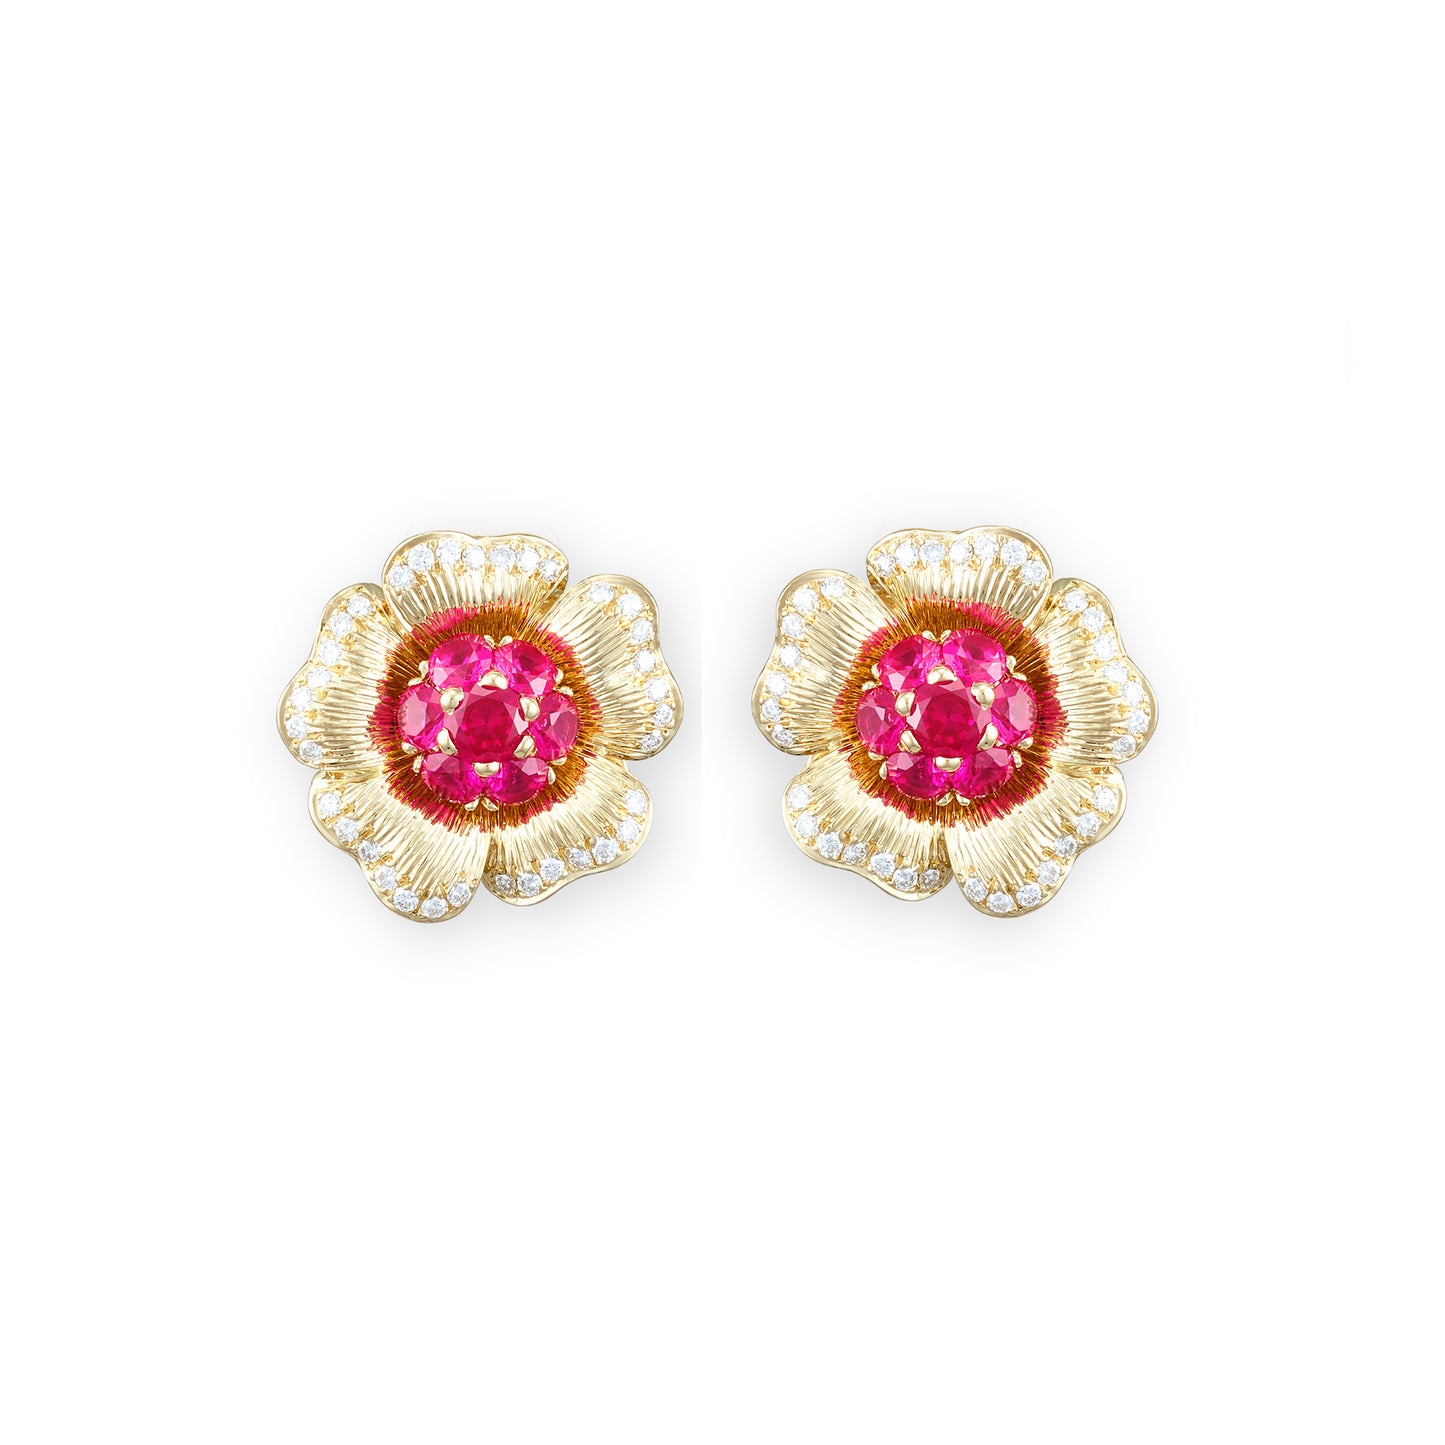 Vintage Pink Sapphire Earrings